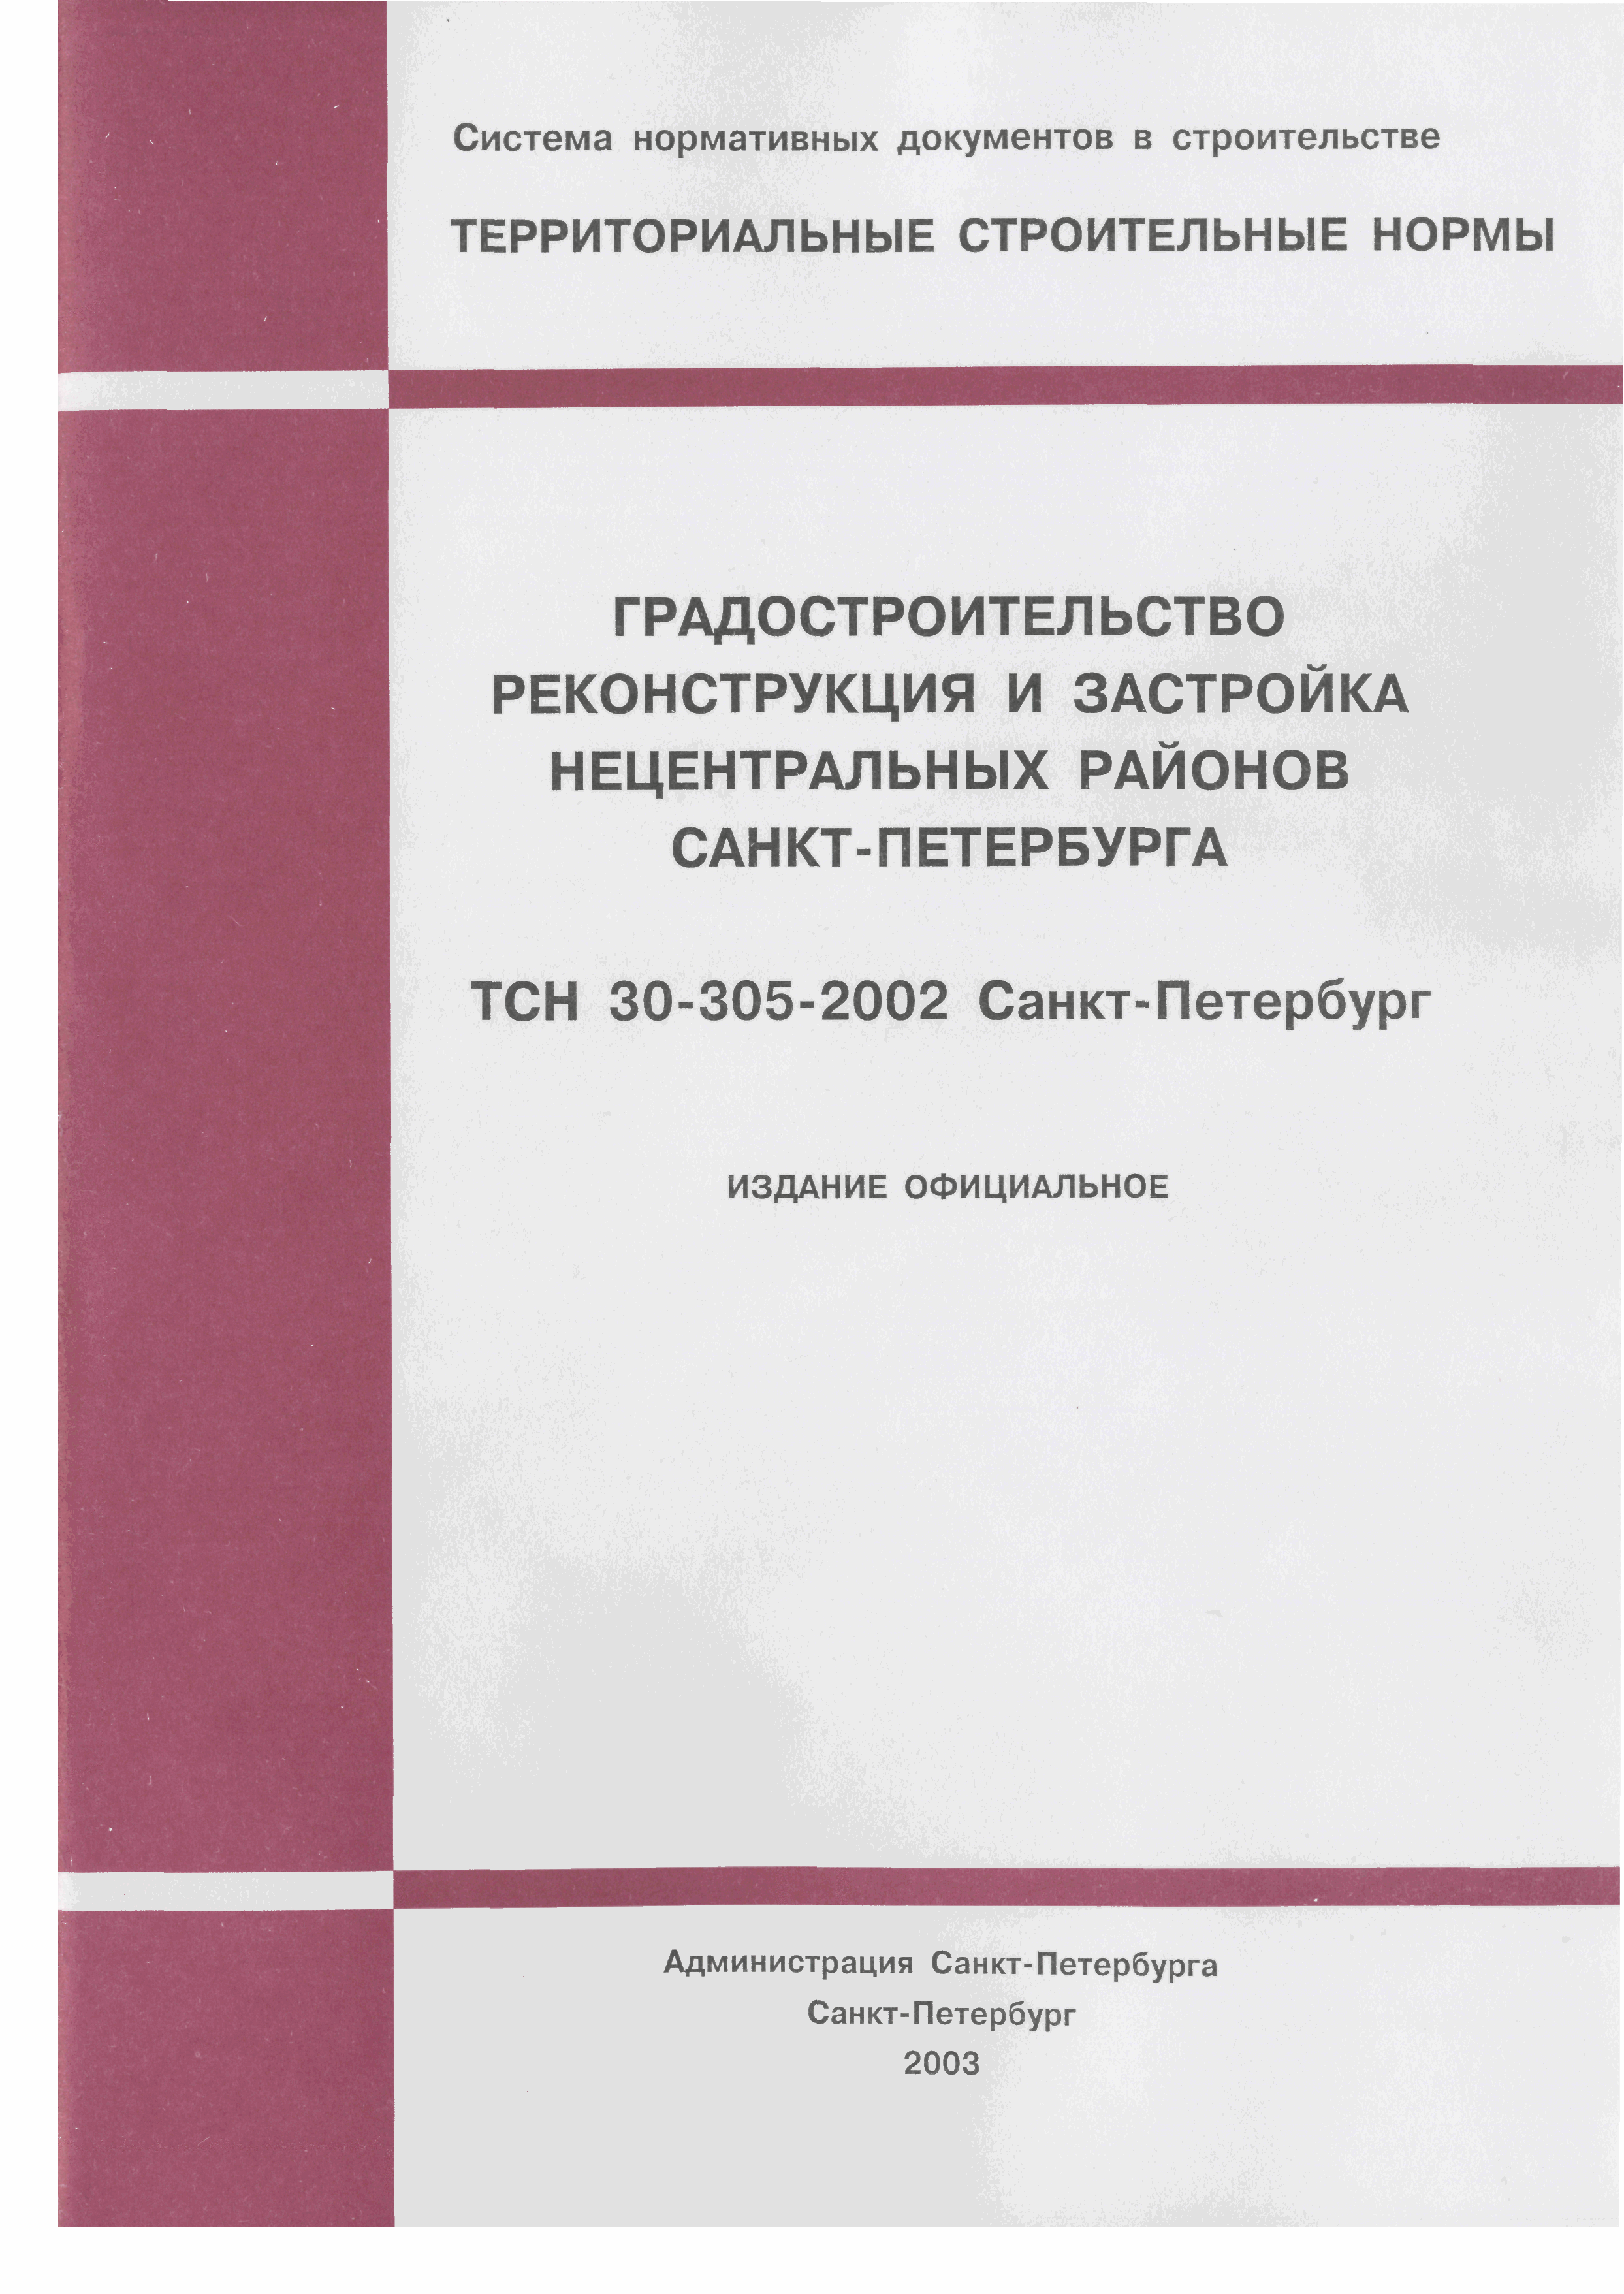 ТСН 30-305-2002